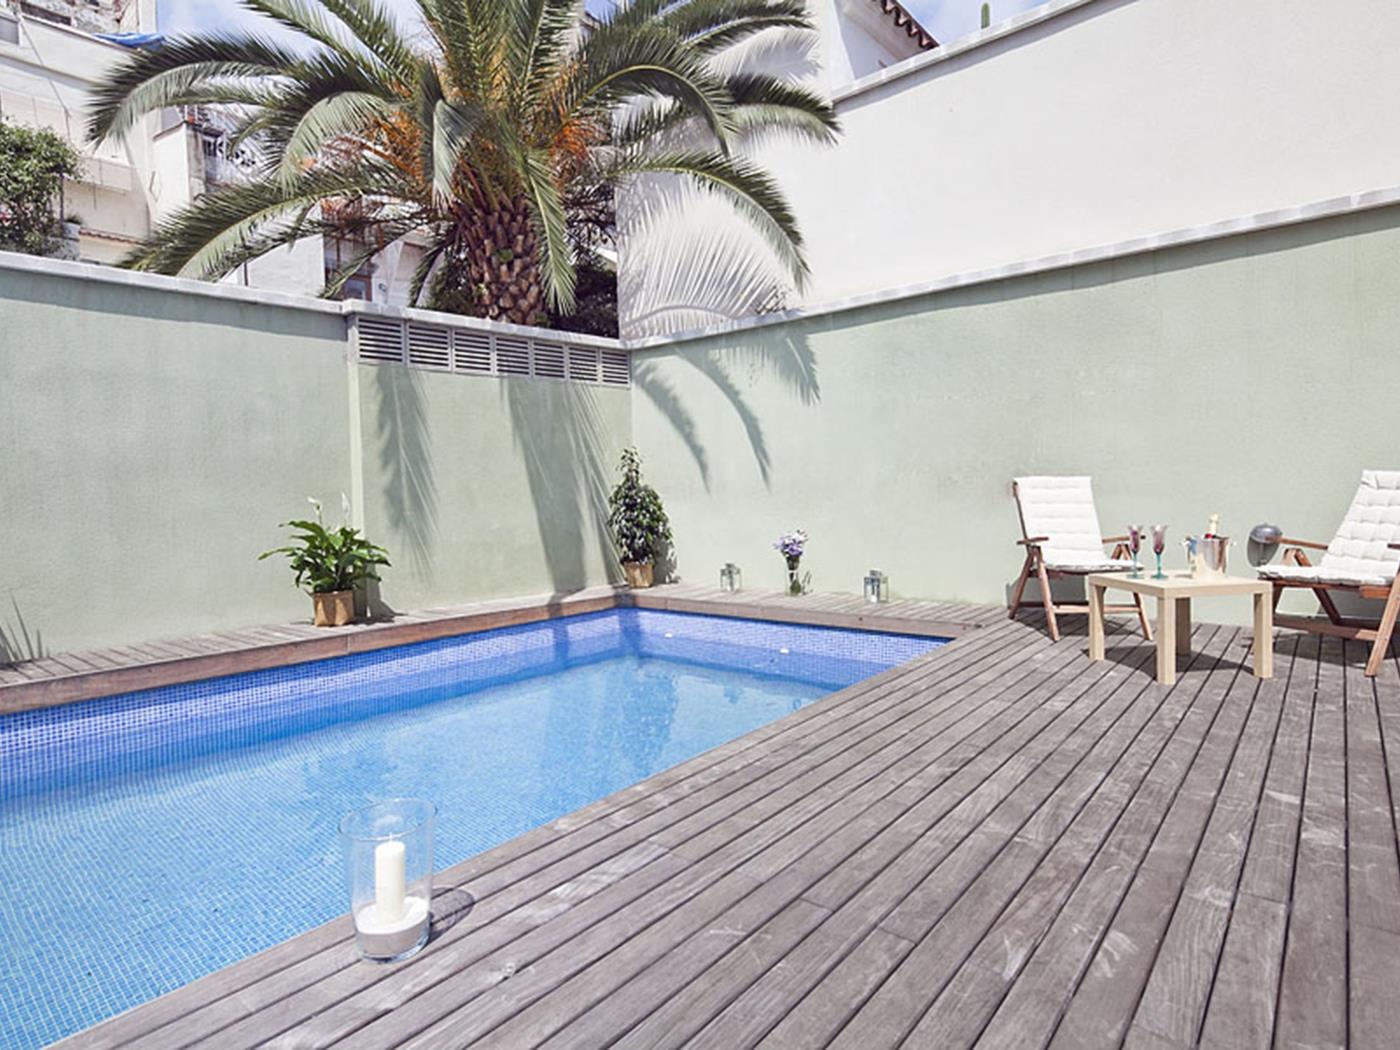 شرفة خاصة وحمام سباحة شقة - My Space Barcelona شقة